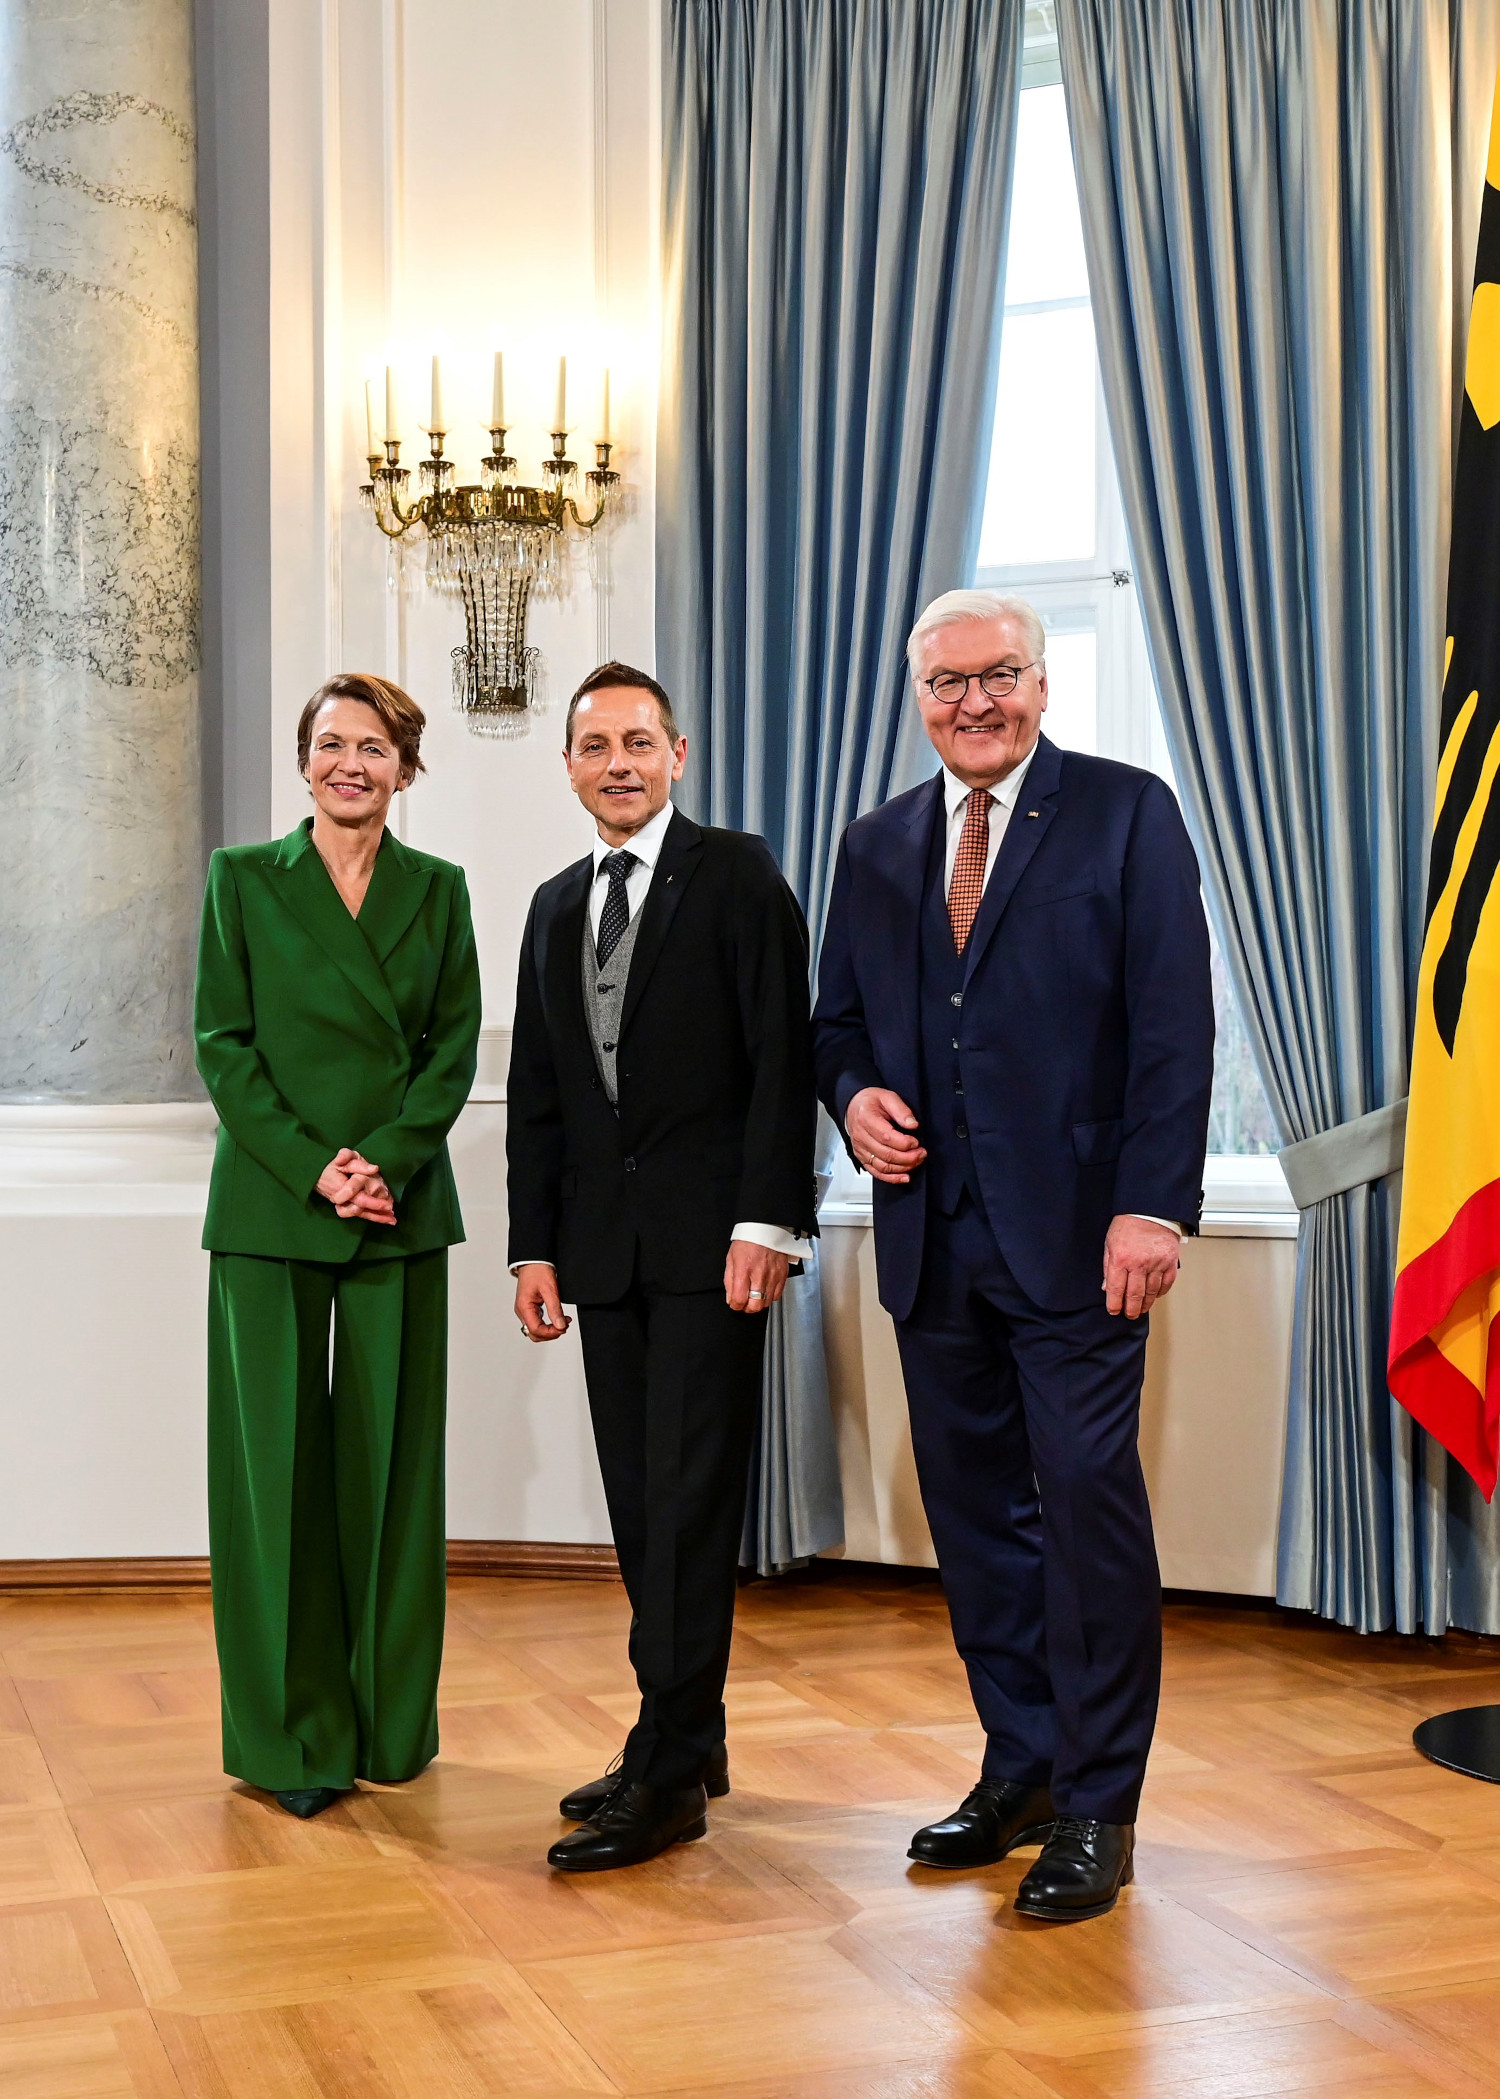 Elke Bündenbender, Thomas de Vachroi und Frank-Walter Steinmeier blicken lächelnd in die Kamera.